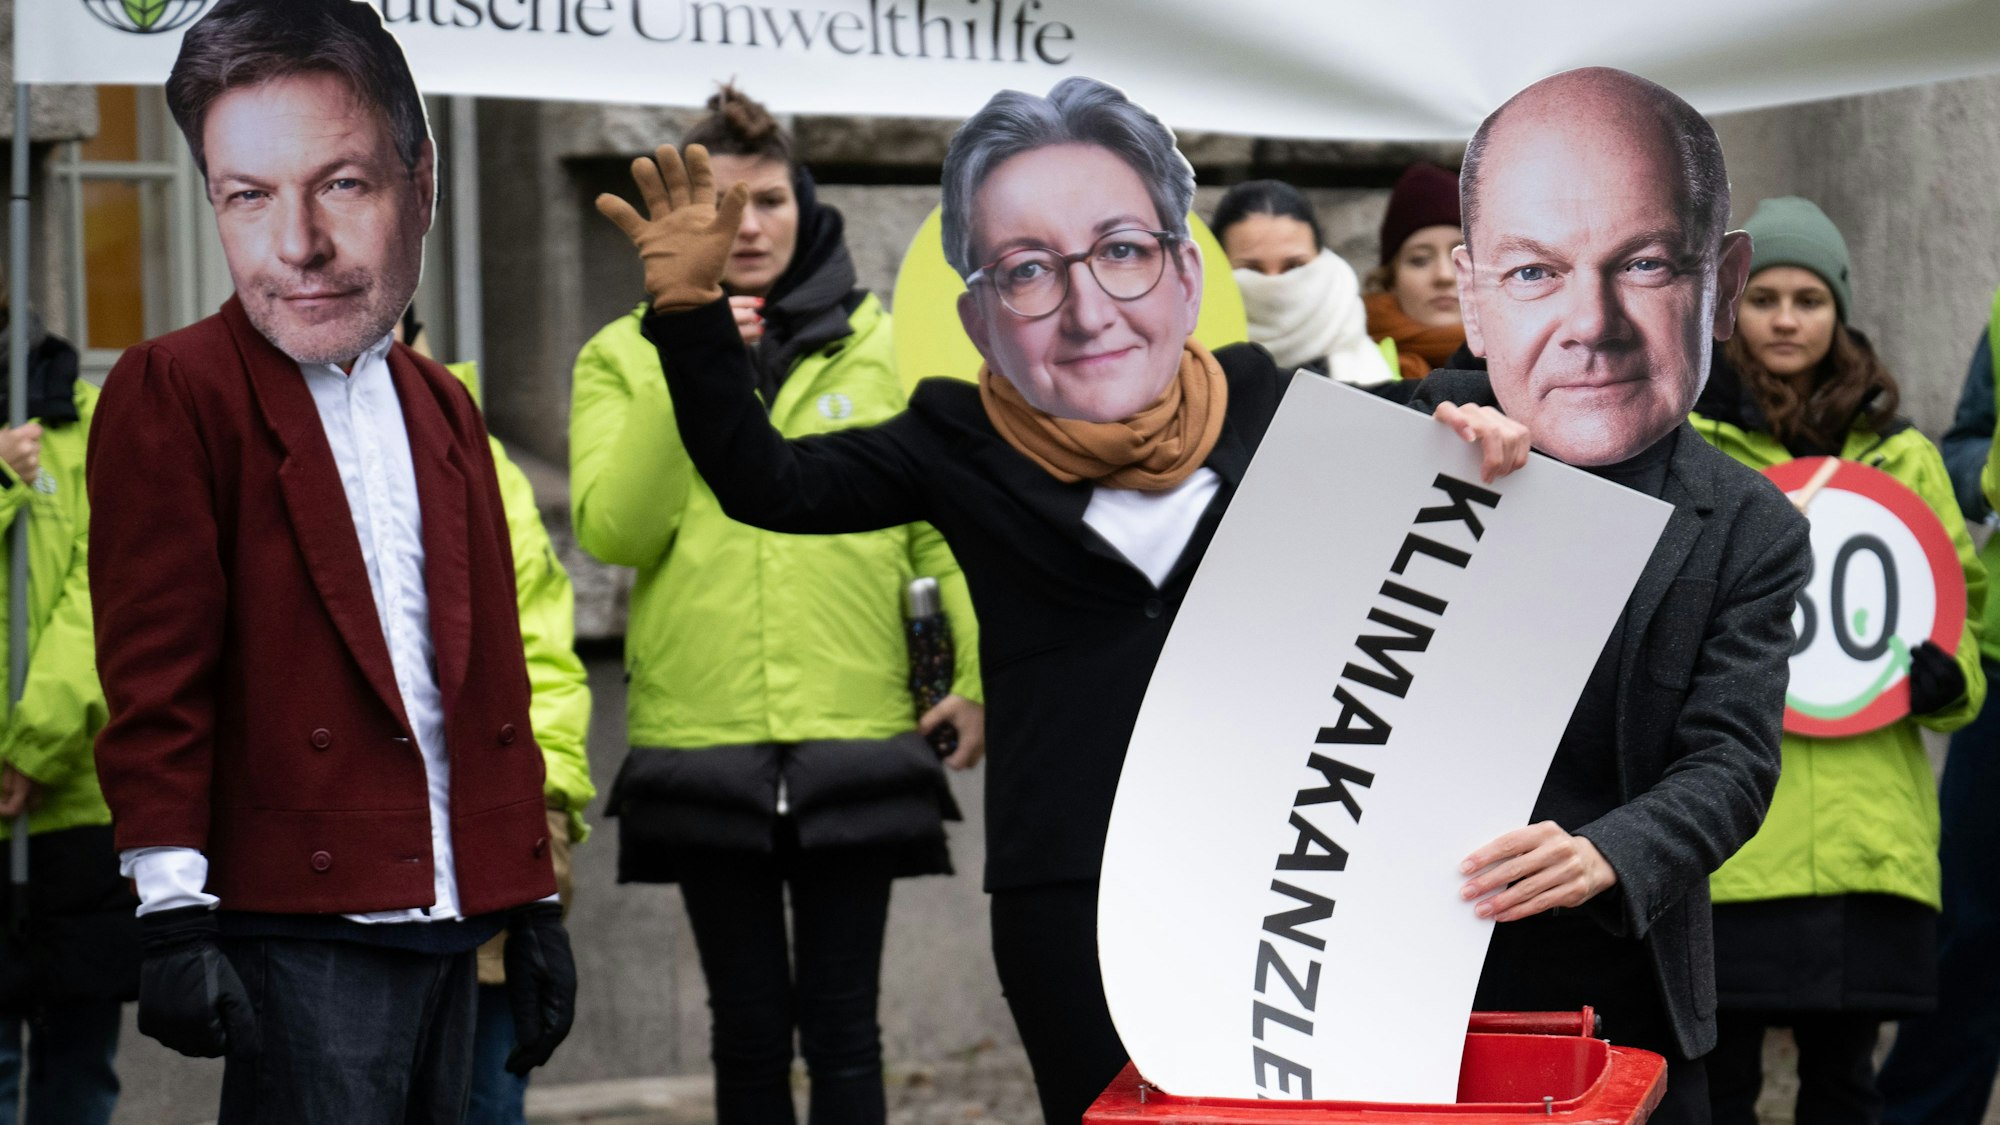 Eine Person mit einer Maske von Bundeskanzler Scholz wirft neben Aktivistinnen und Aktivisten mit Masken von Wirtschaftsminister Habeck und Bauministerin Geywitz, ein Schild mit der Aufschrift „Klimakanzler“ in eine Mülltonne.